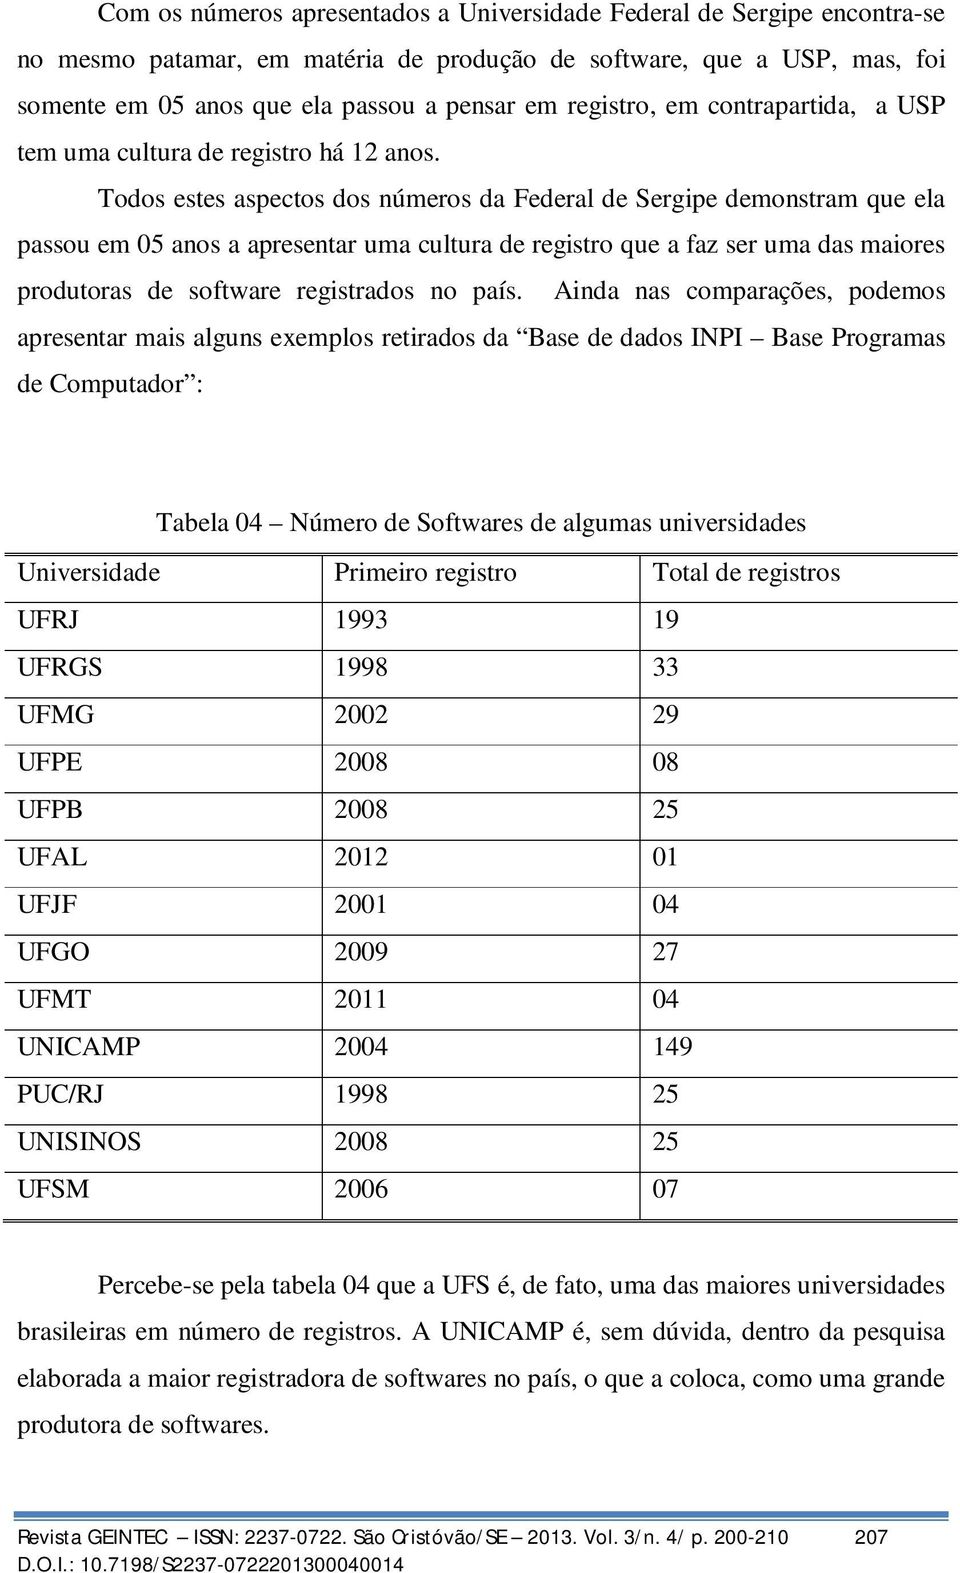 Todos estes aspectos dos números da Federal de Sergipe demonstram que ela passou em 05 anos a apresentar uma cultura de registro que a faz ser uma das maiores produtoras de software registrados no